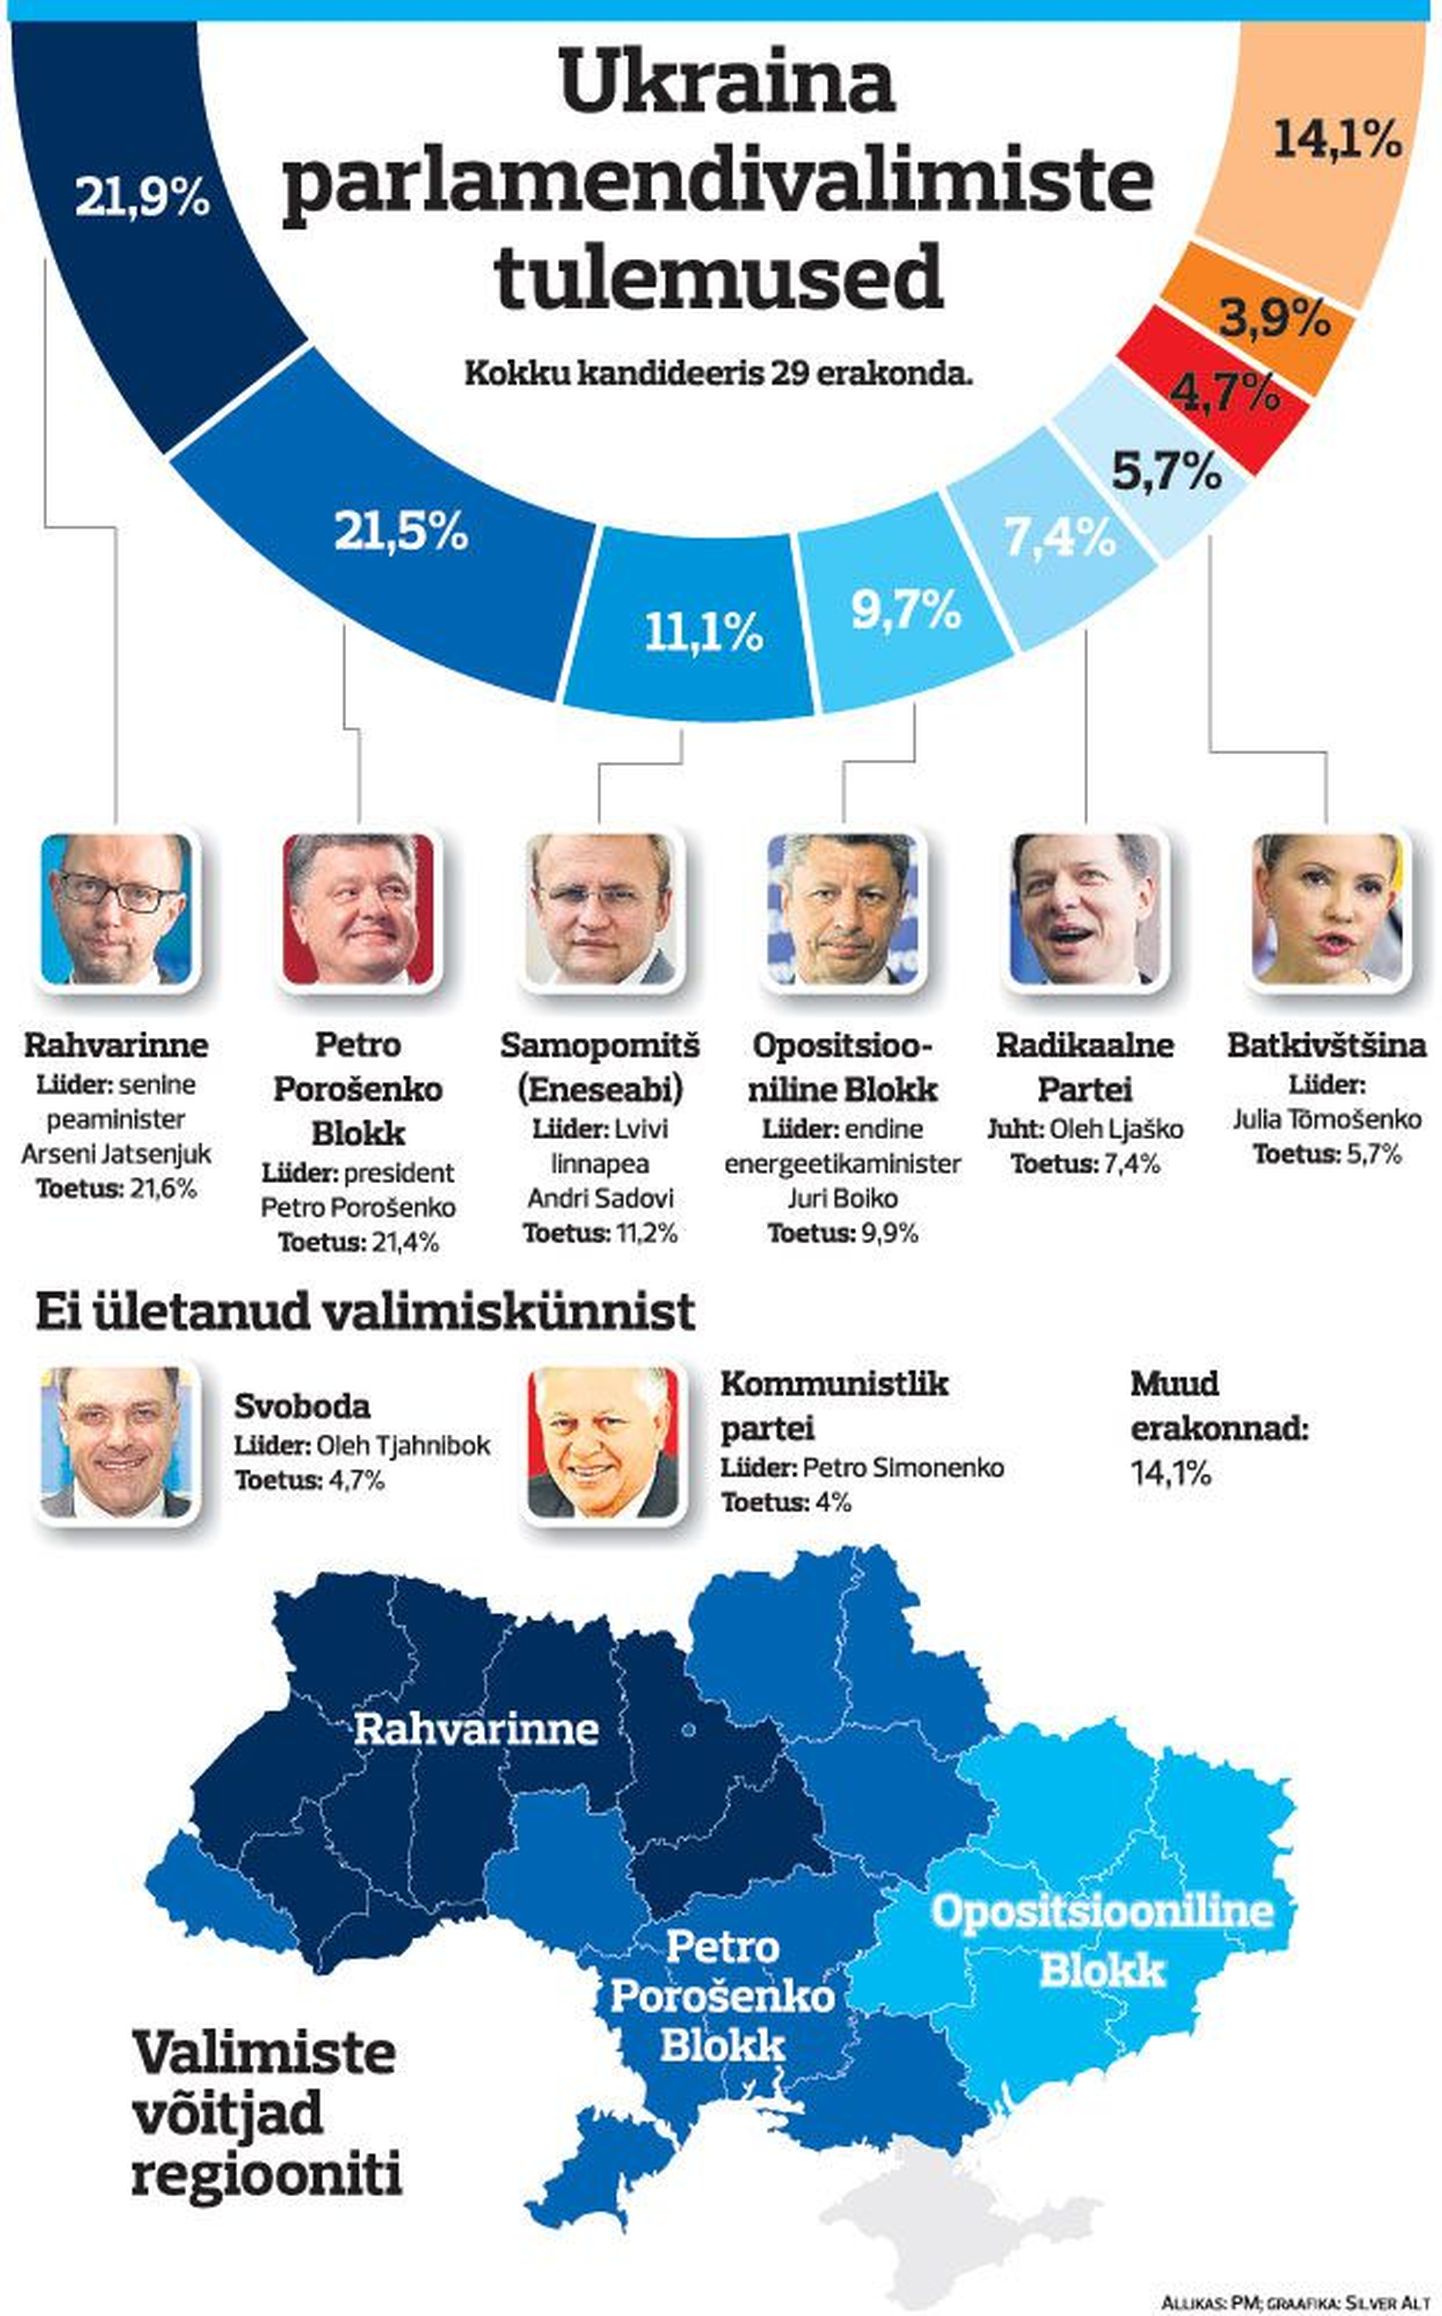 Ukraina parlamendivaliste tulemused.